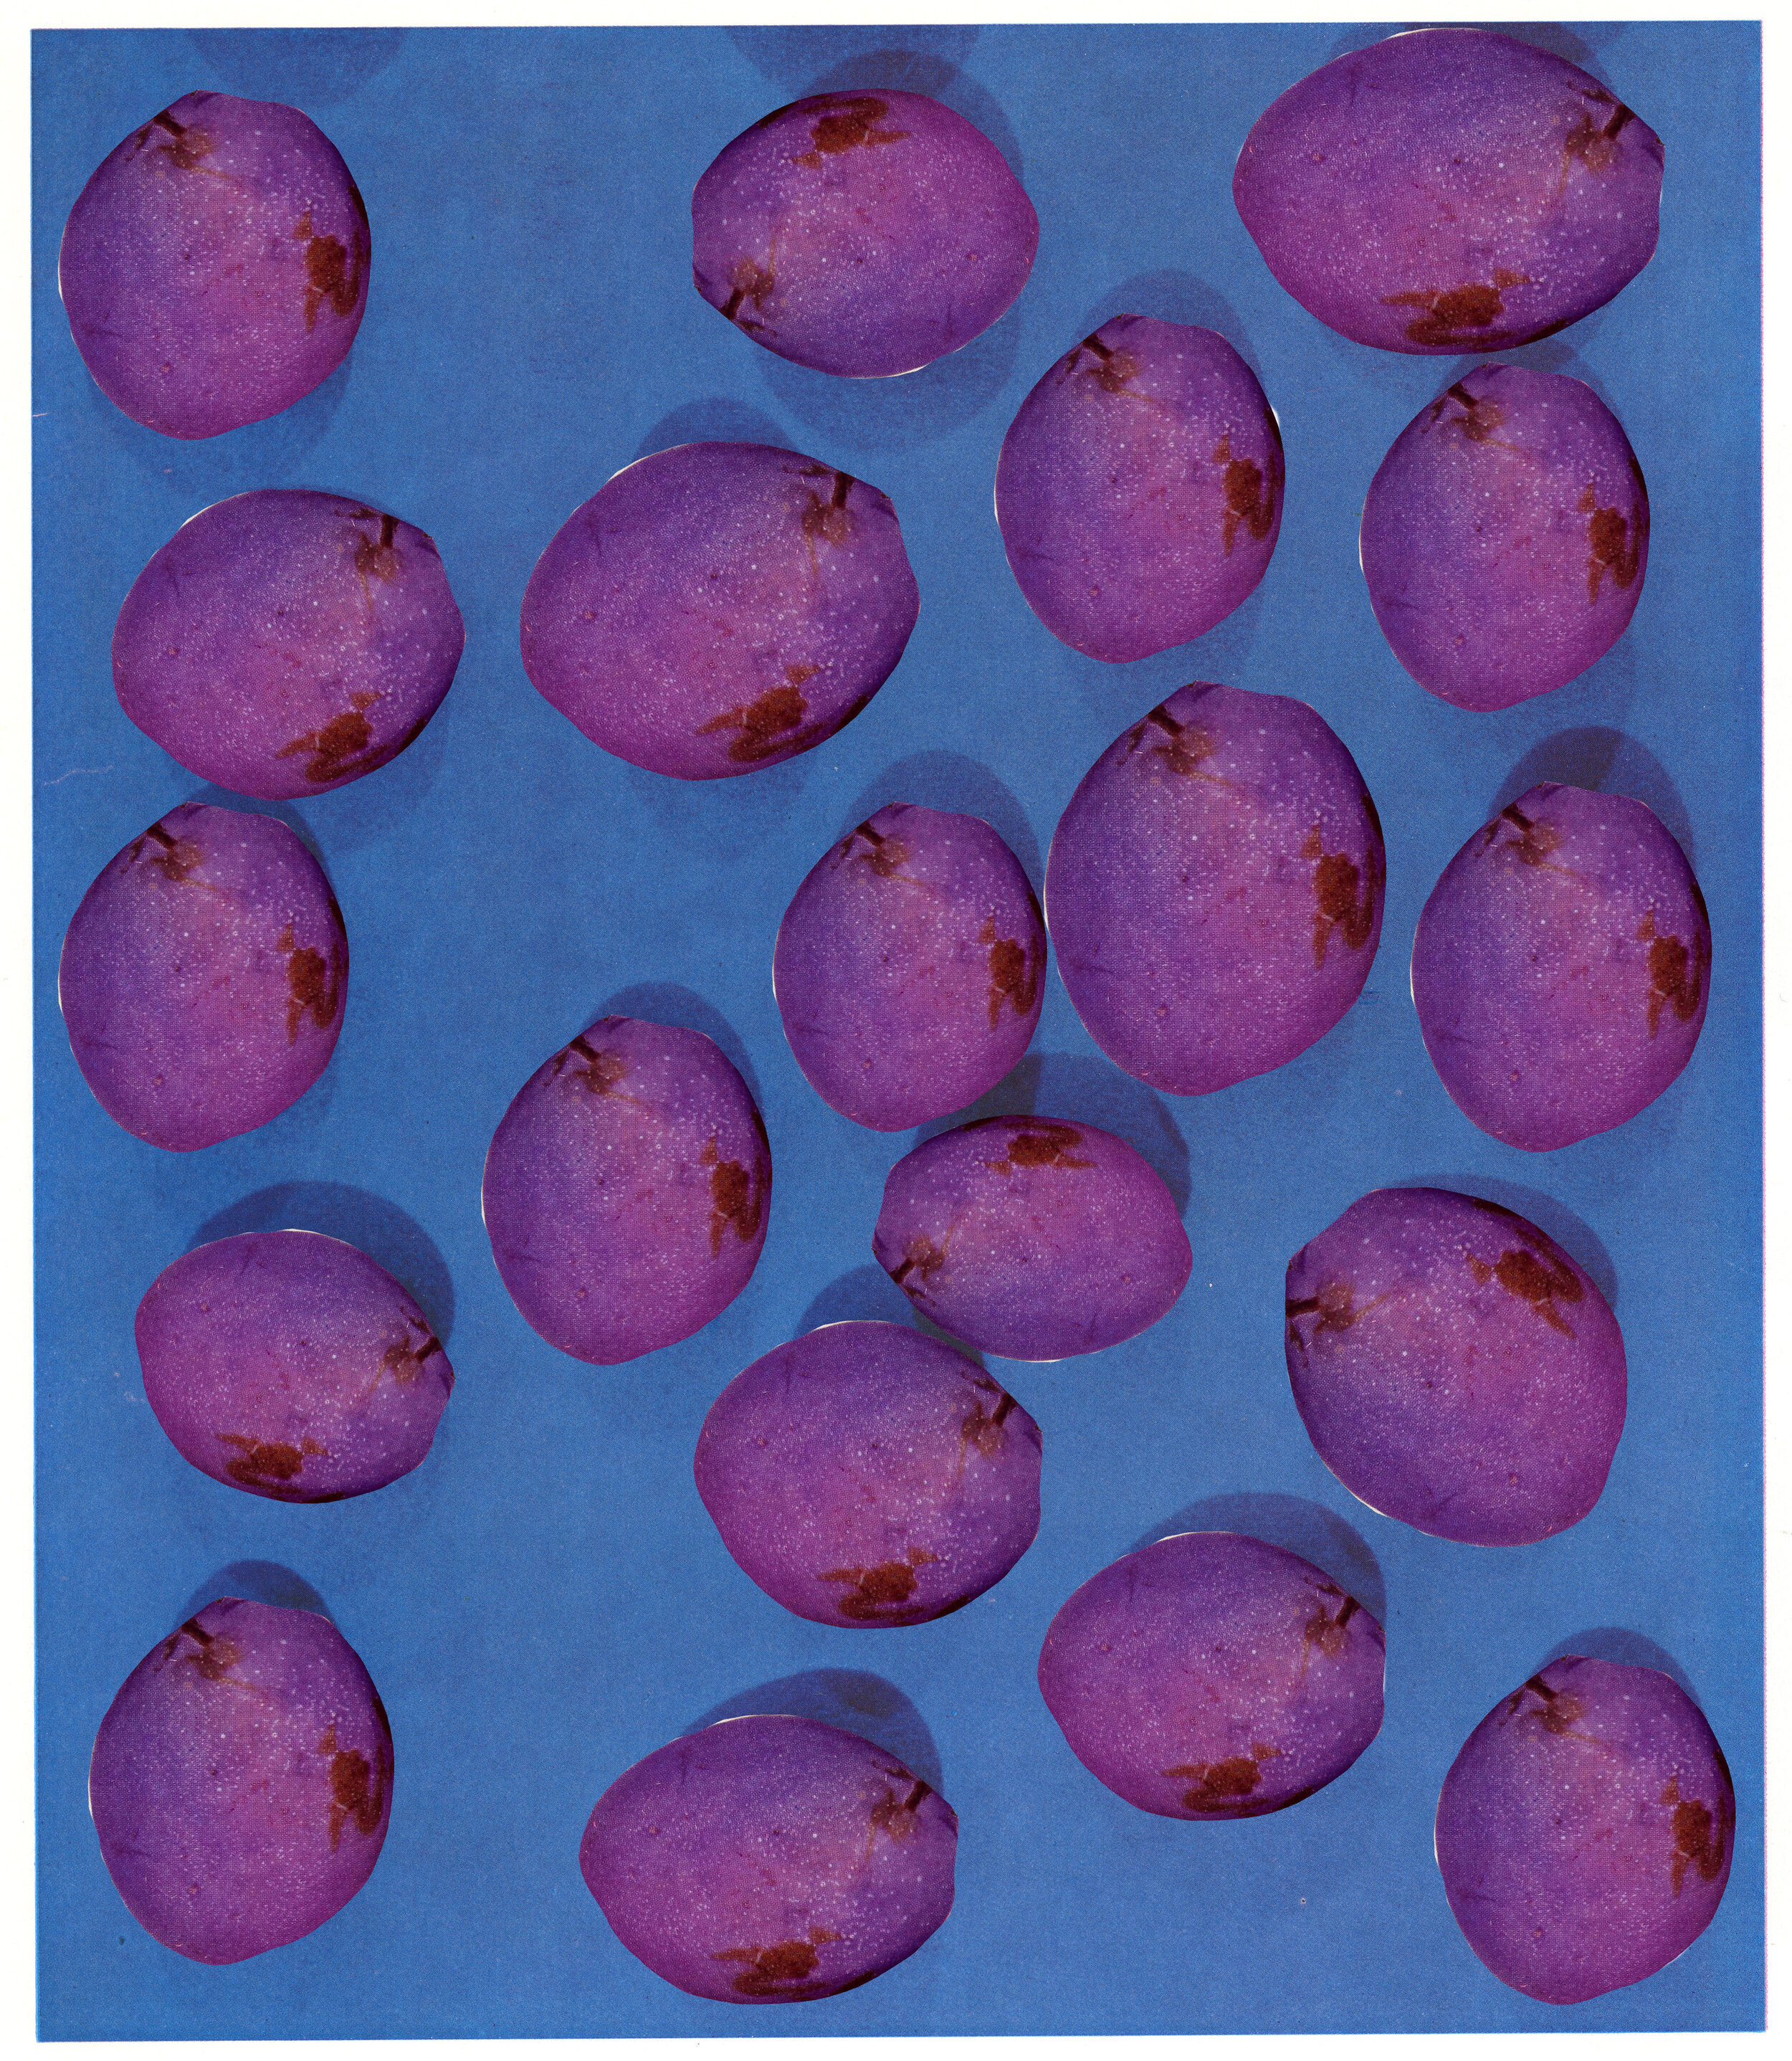 Everbearing Varieties, Fine art inkjet-print, 2020